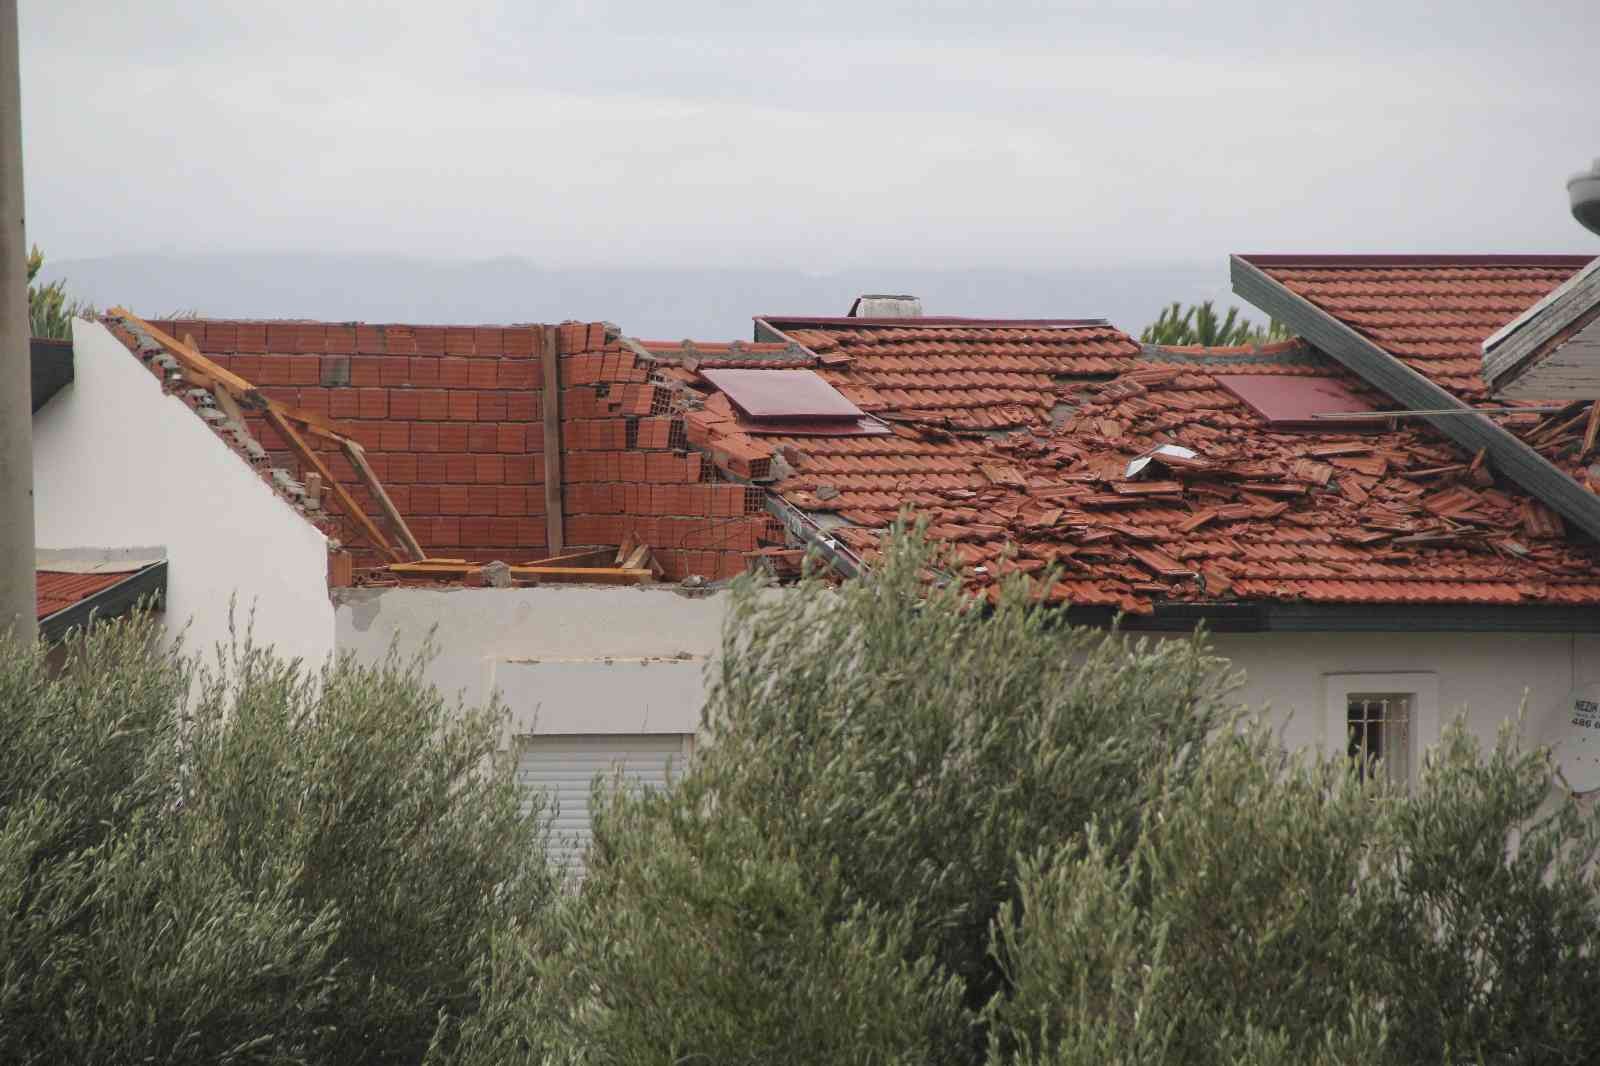 Ünlü tatil merkezi Çeşme’yi hortum vurdu: 20 evin çatısında hasar var #izmir